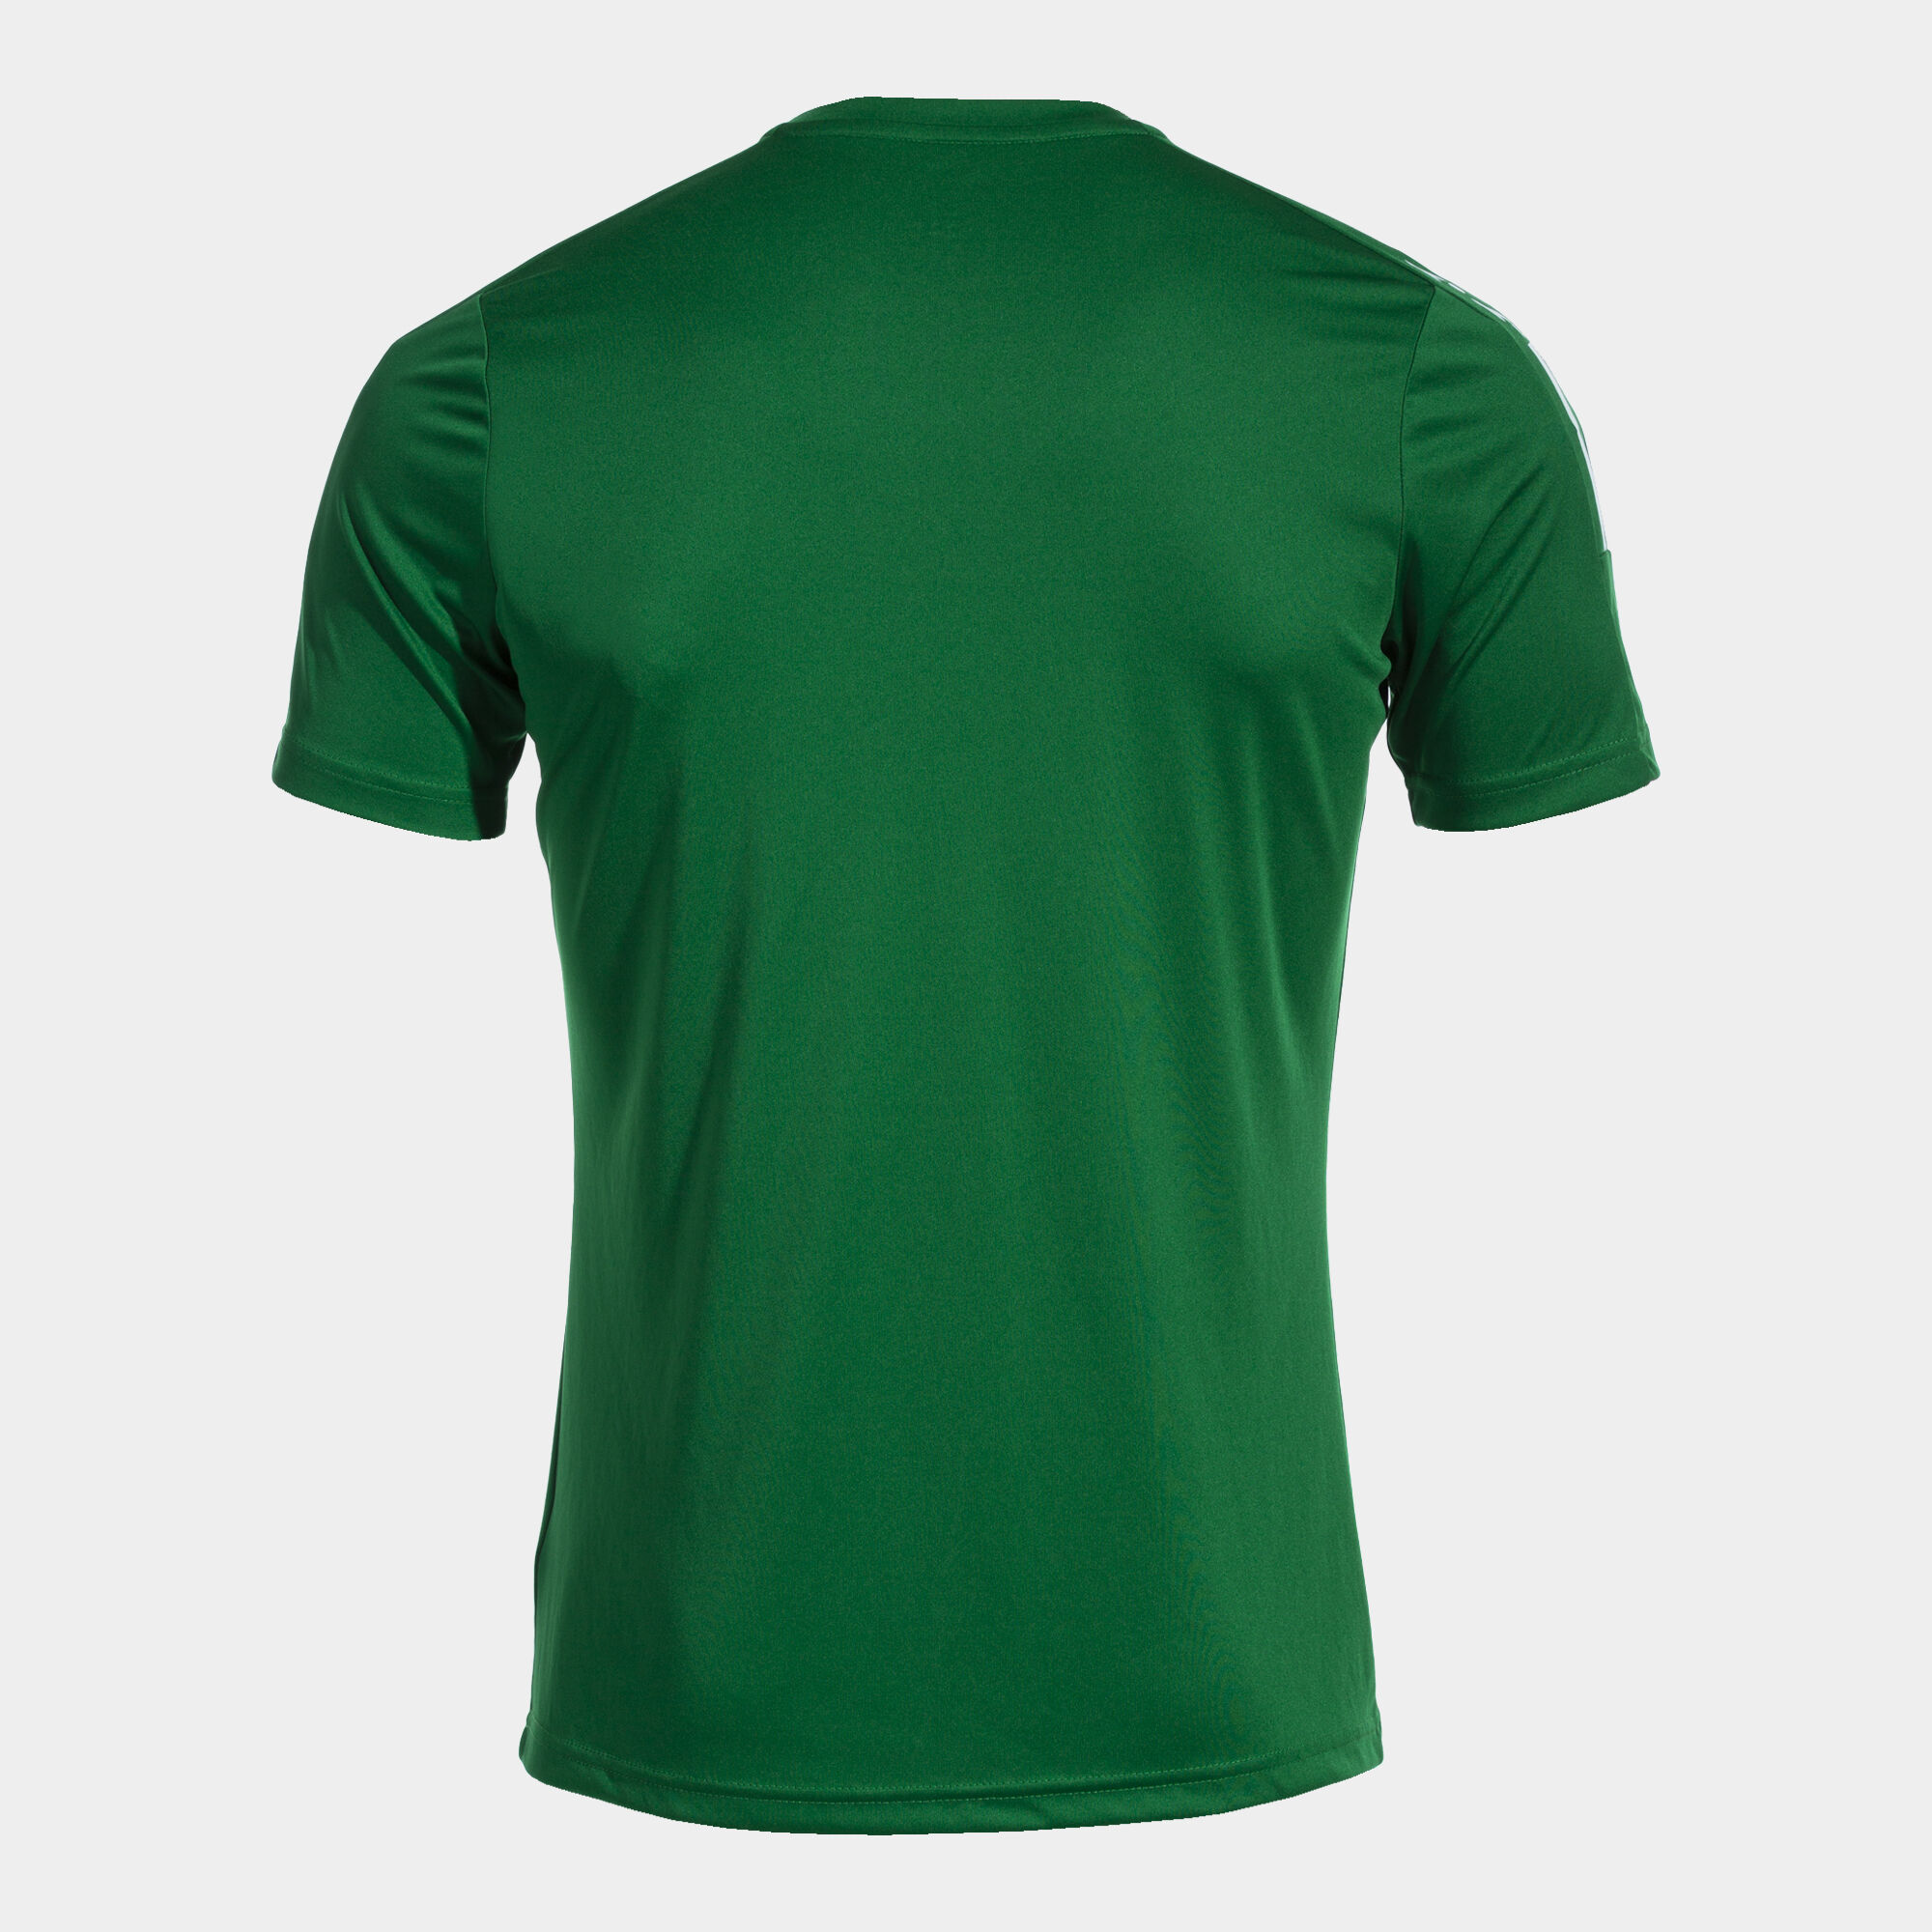 Camiseta manga corta hombre Olimpiada verde